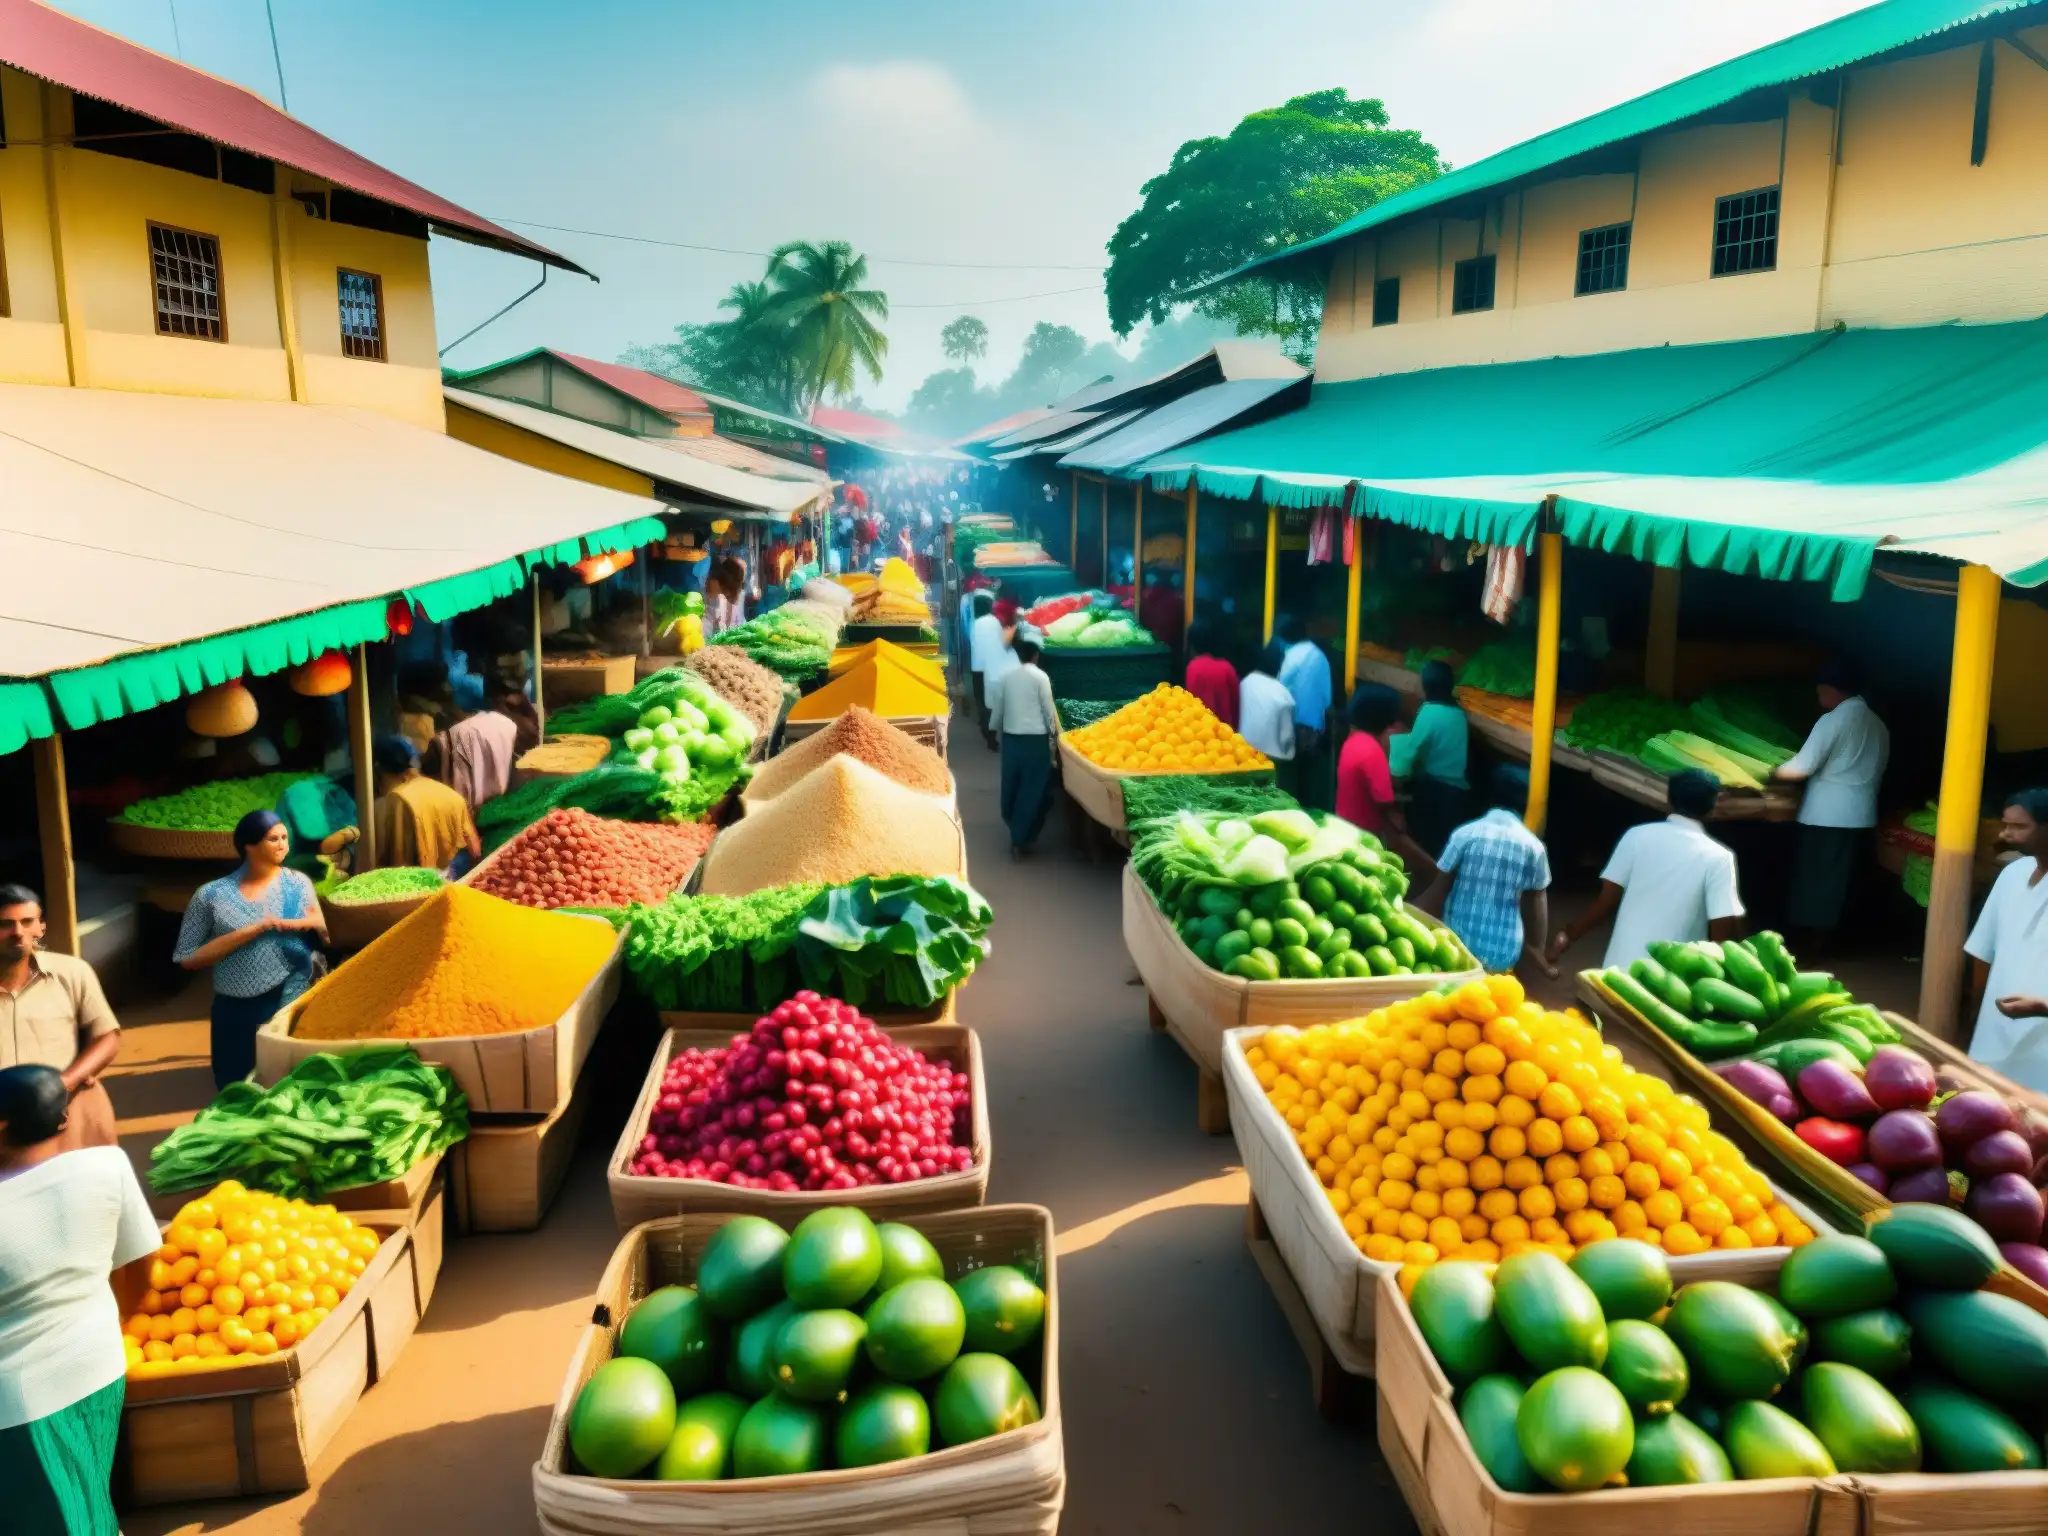 Un mercado bullicioso en Sri Lanka, con puestos coloridos, frutas frescas y gente animada bajo la cálida luz del sol